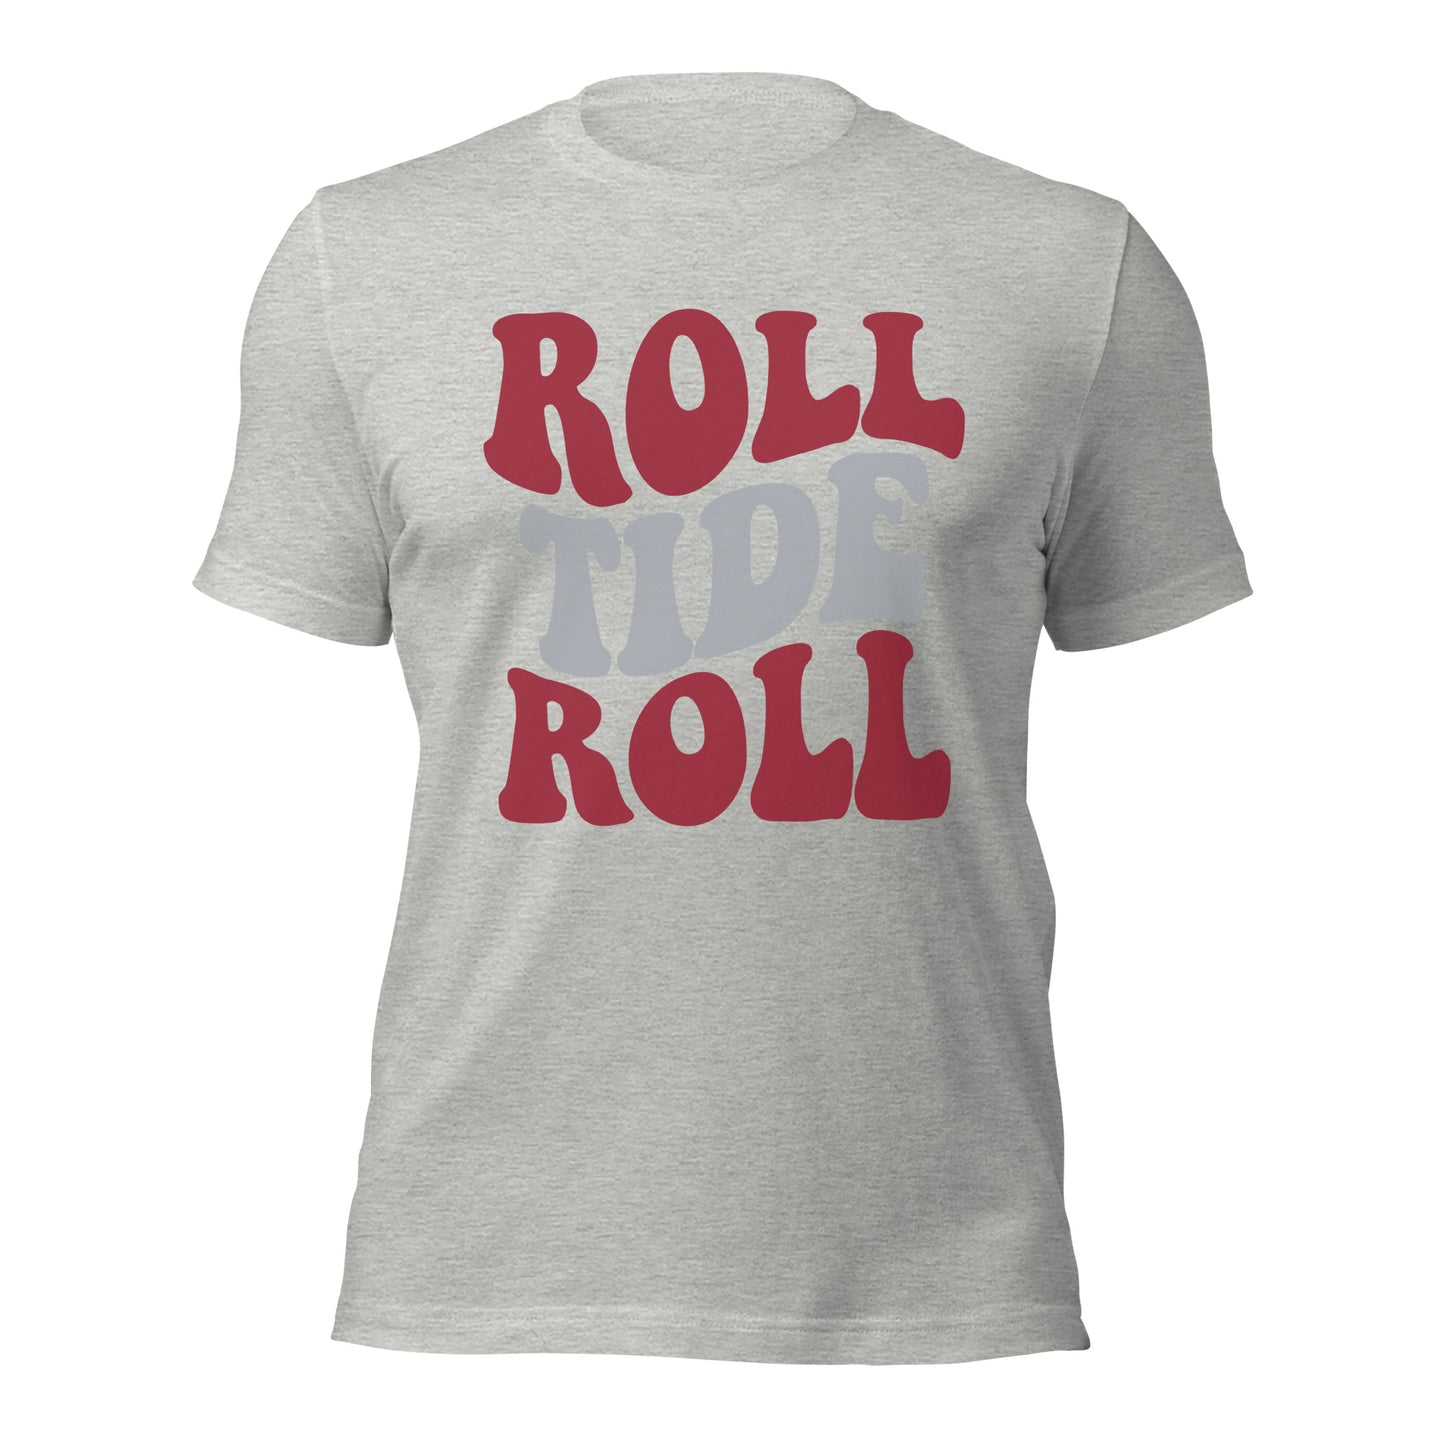 Roll Tide Roll t-shirt